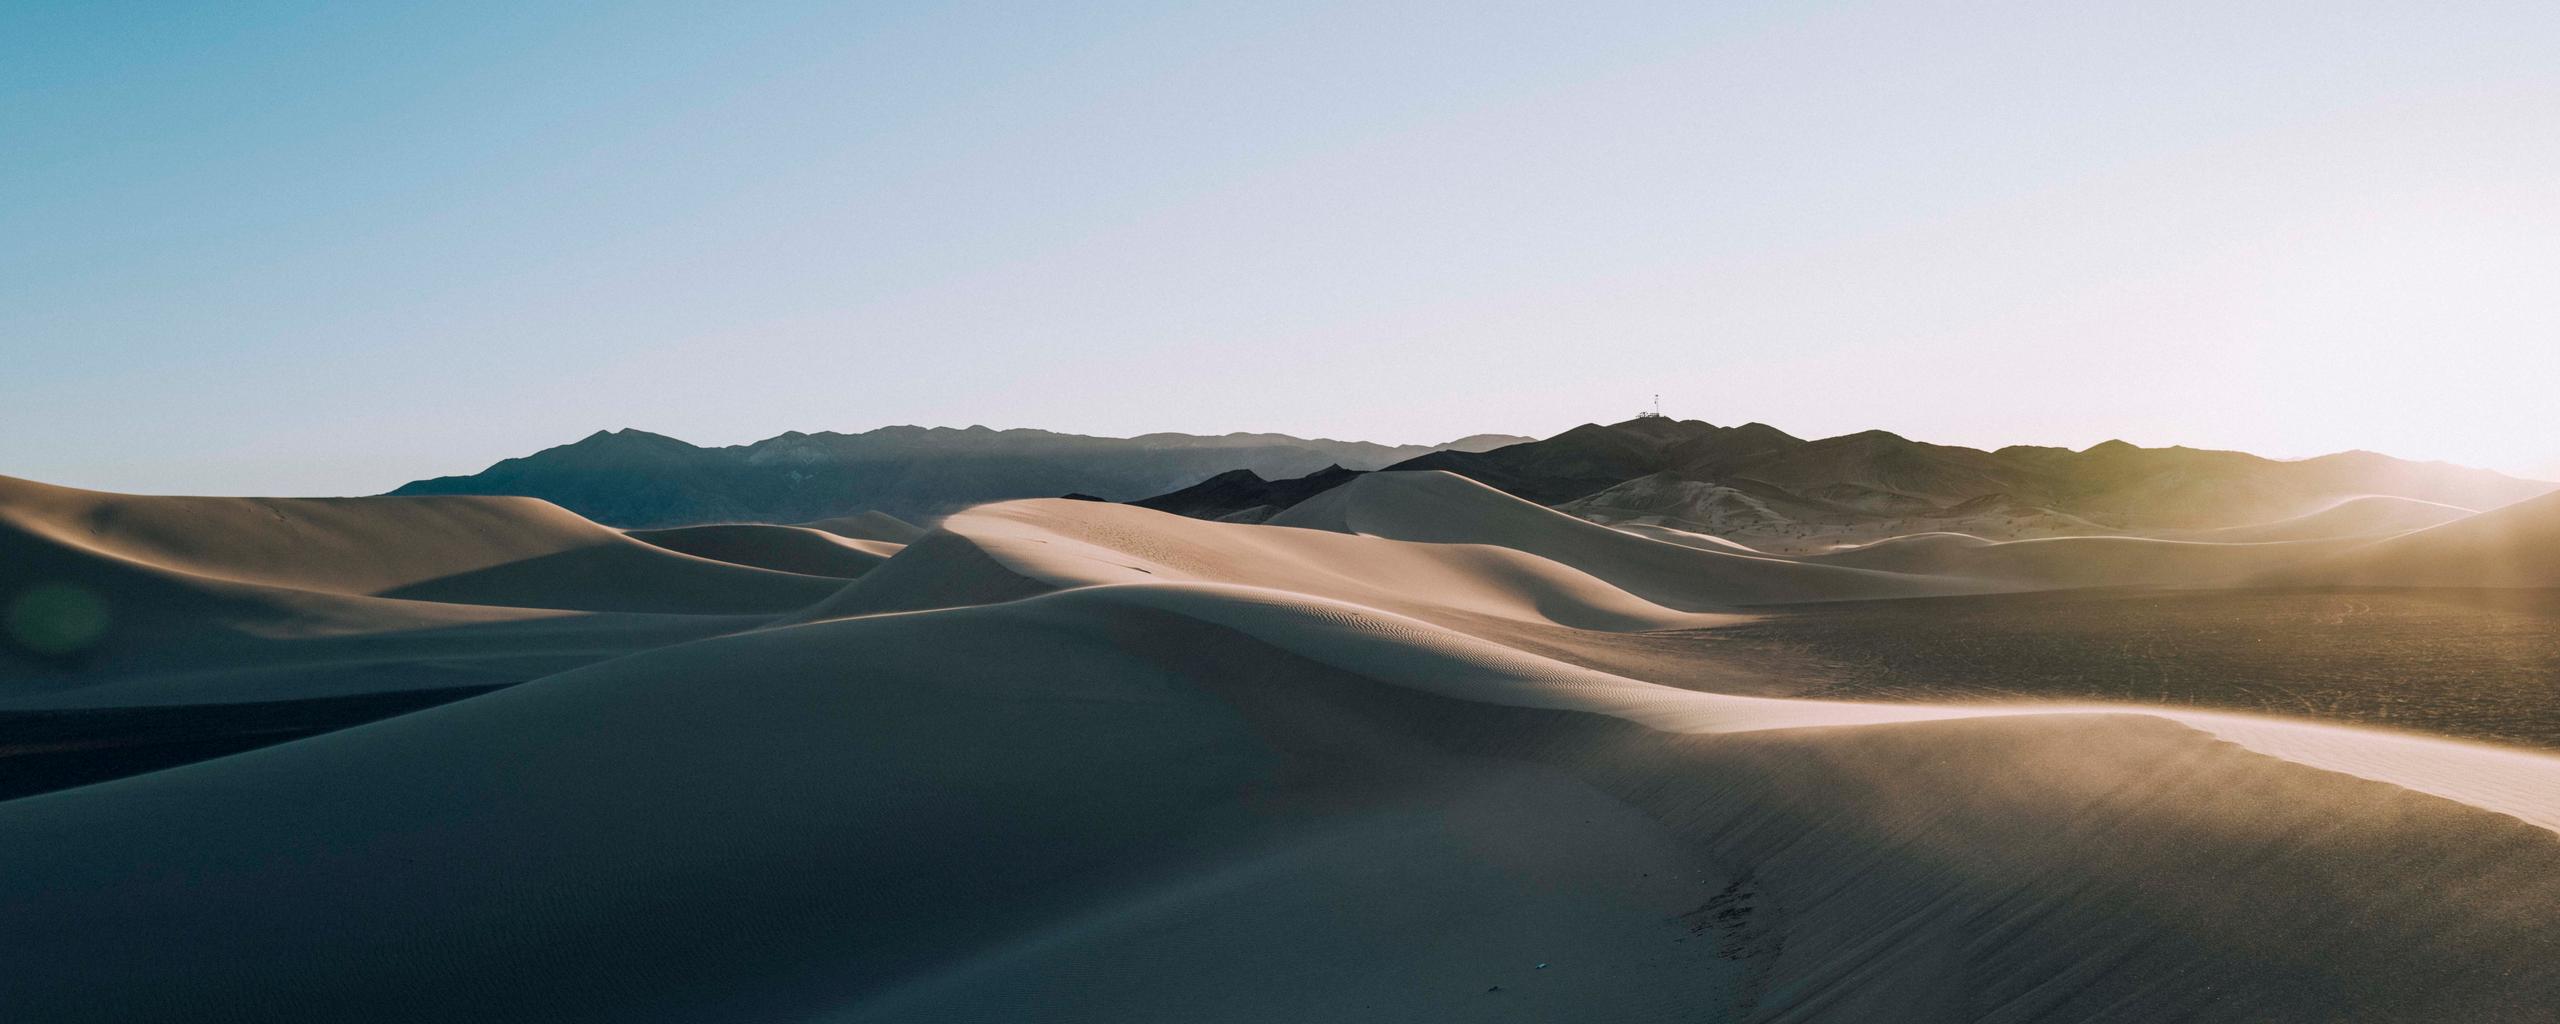 Landscape of sand dunes during golder hour